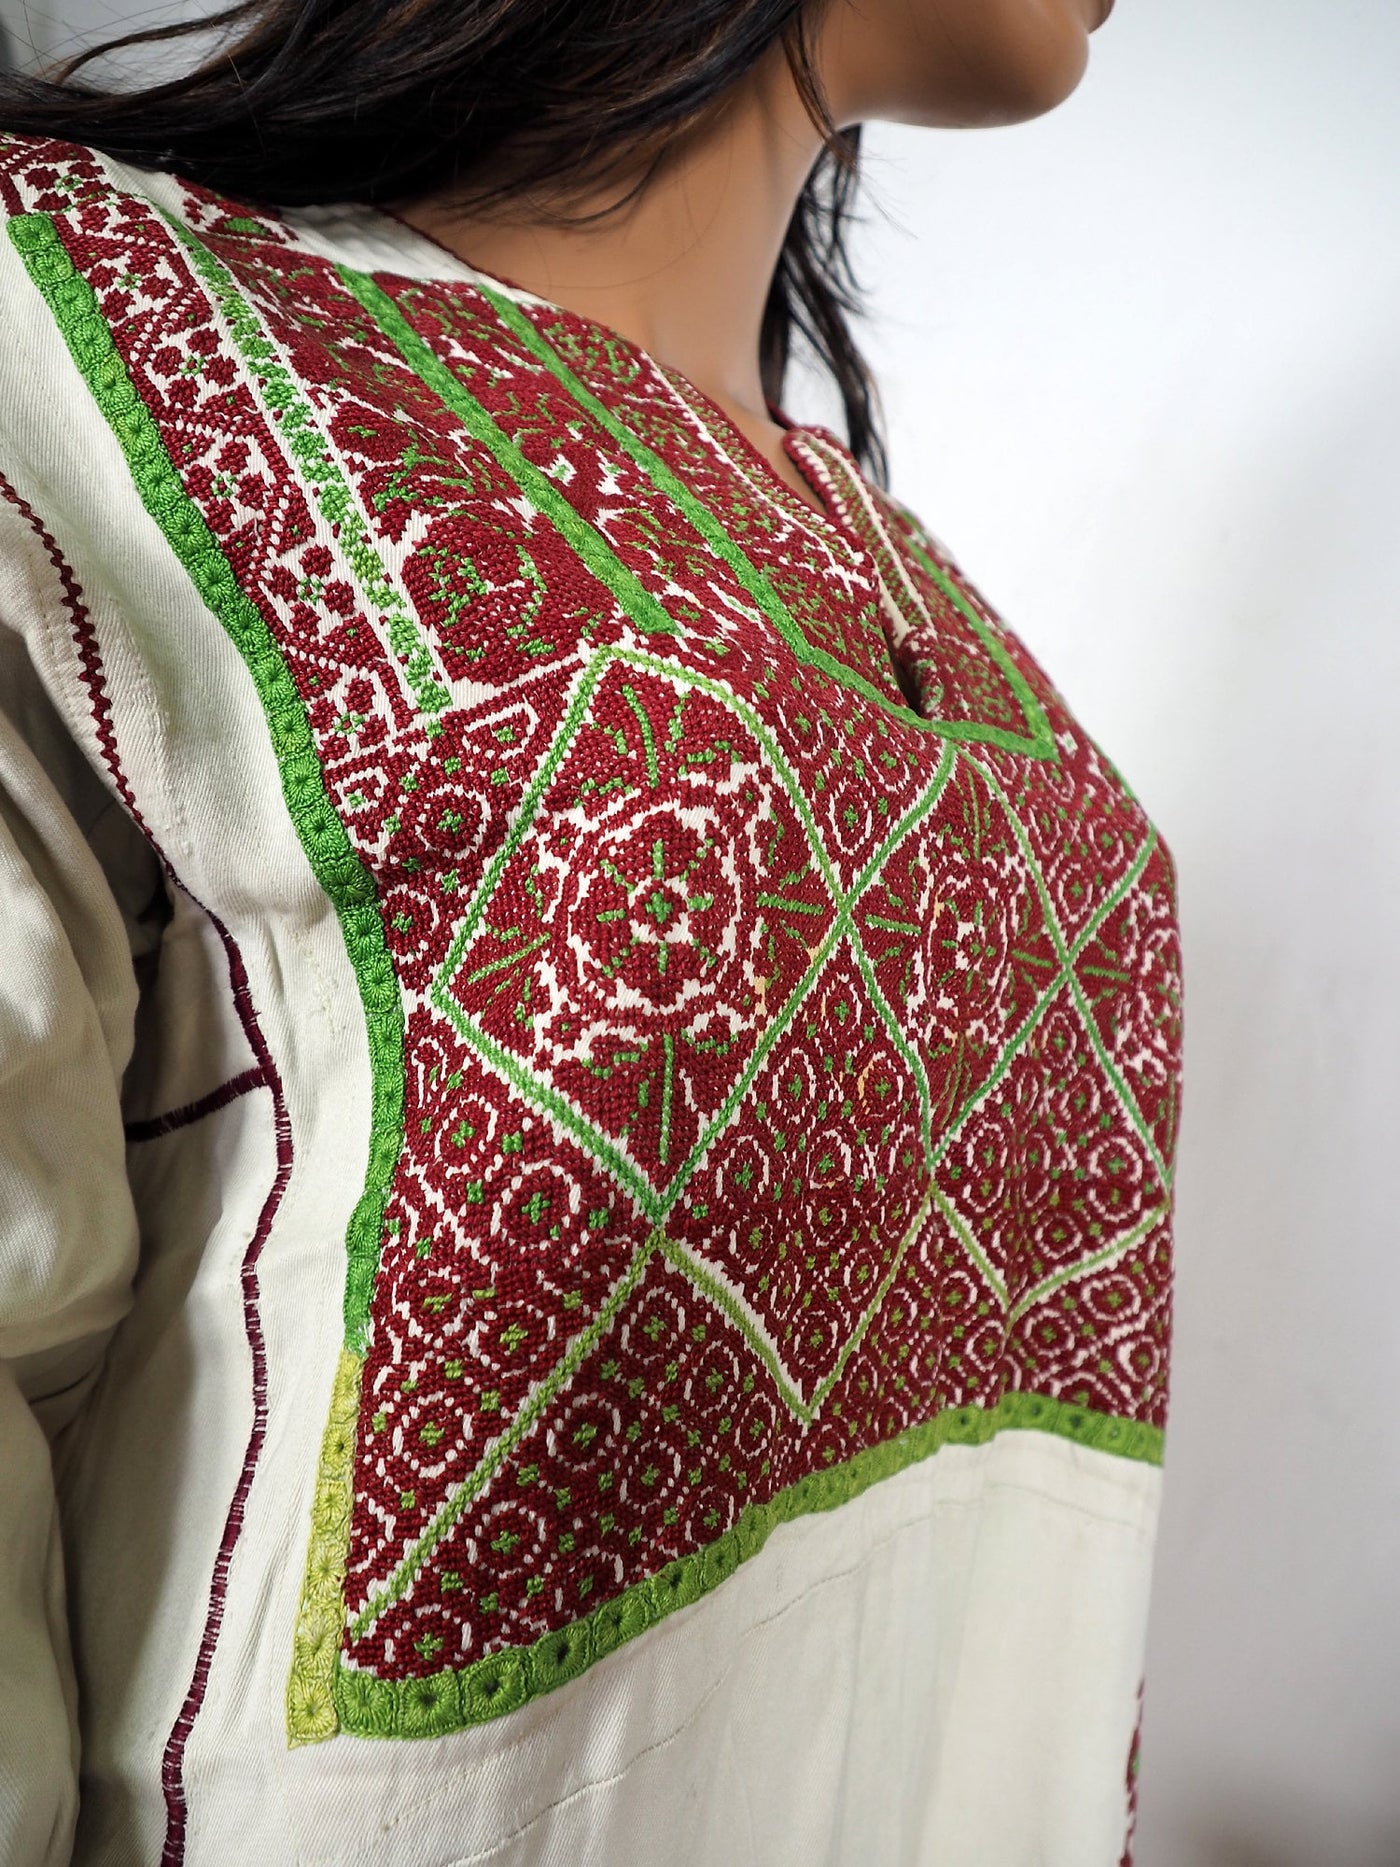 Orient Beduin Palästina frauen Kleid Palestinian hand bestickte kostüm Nr-13  Orientsbazar   